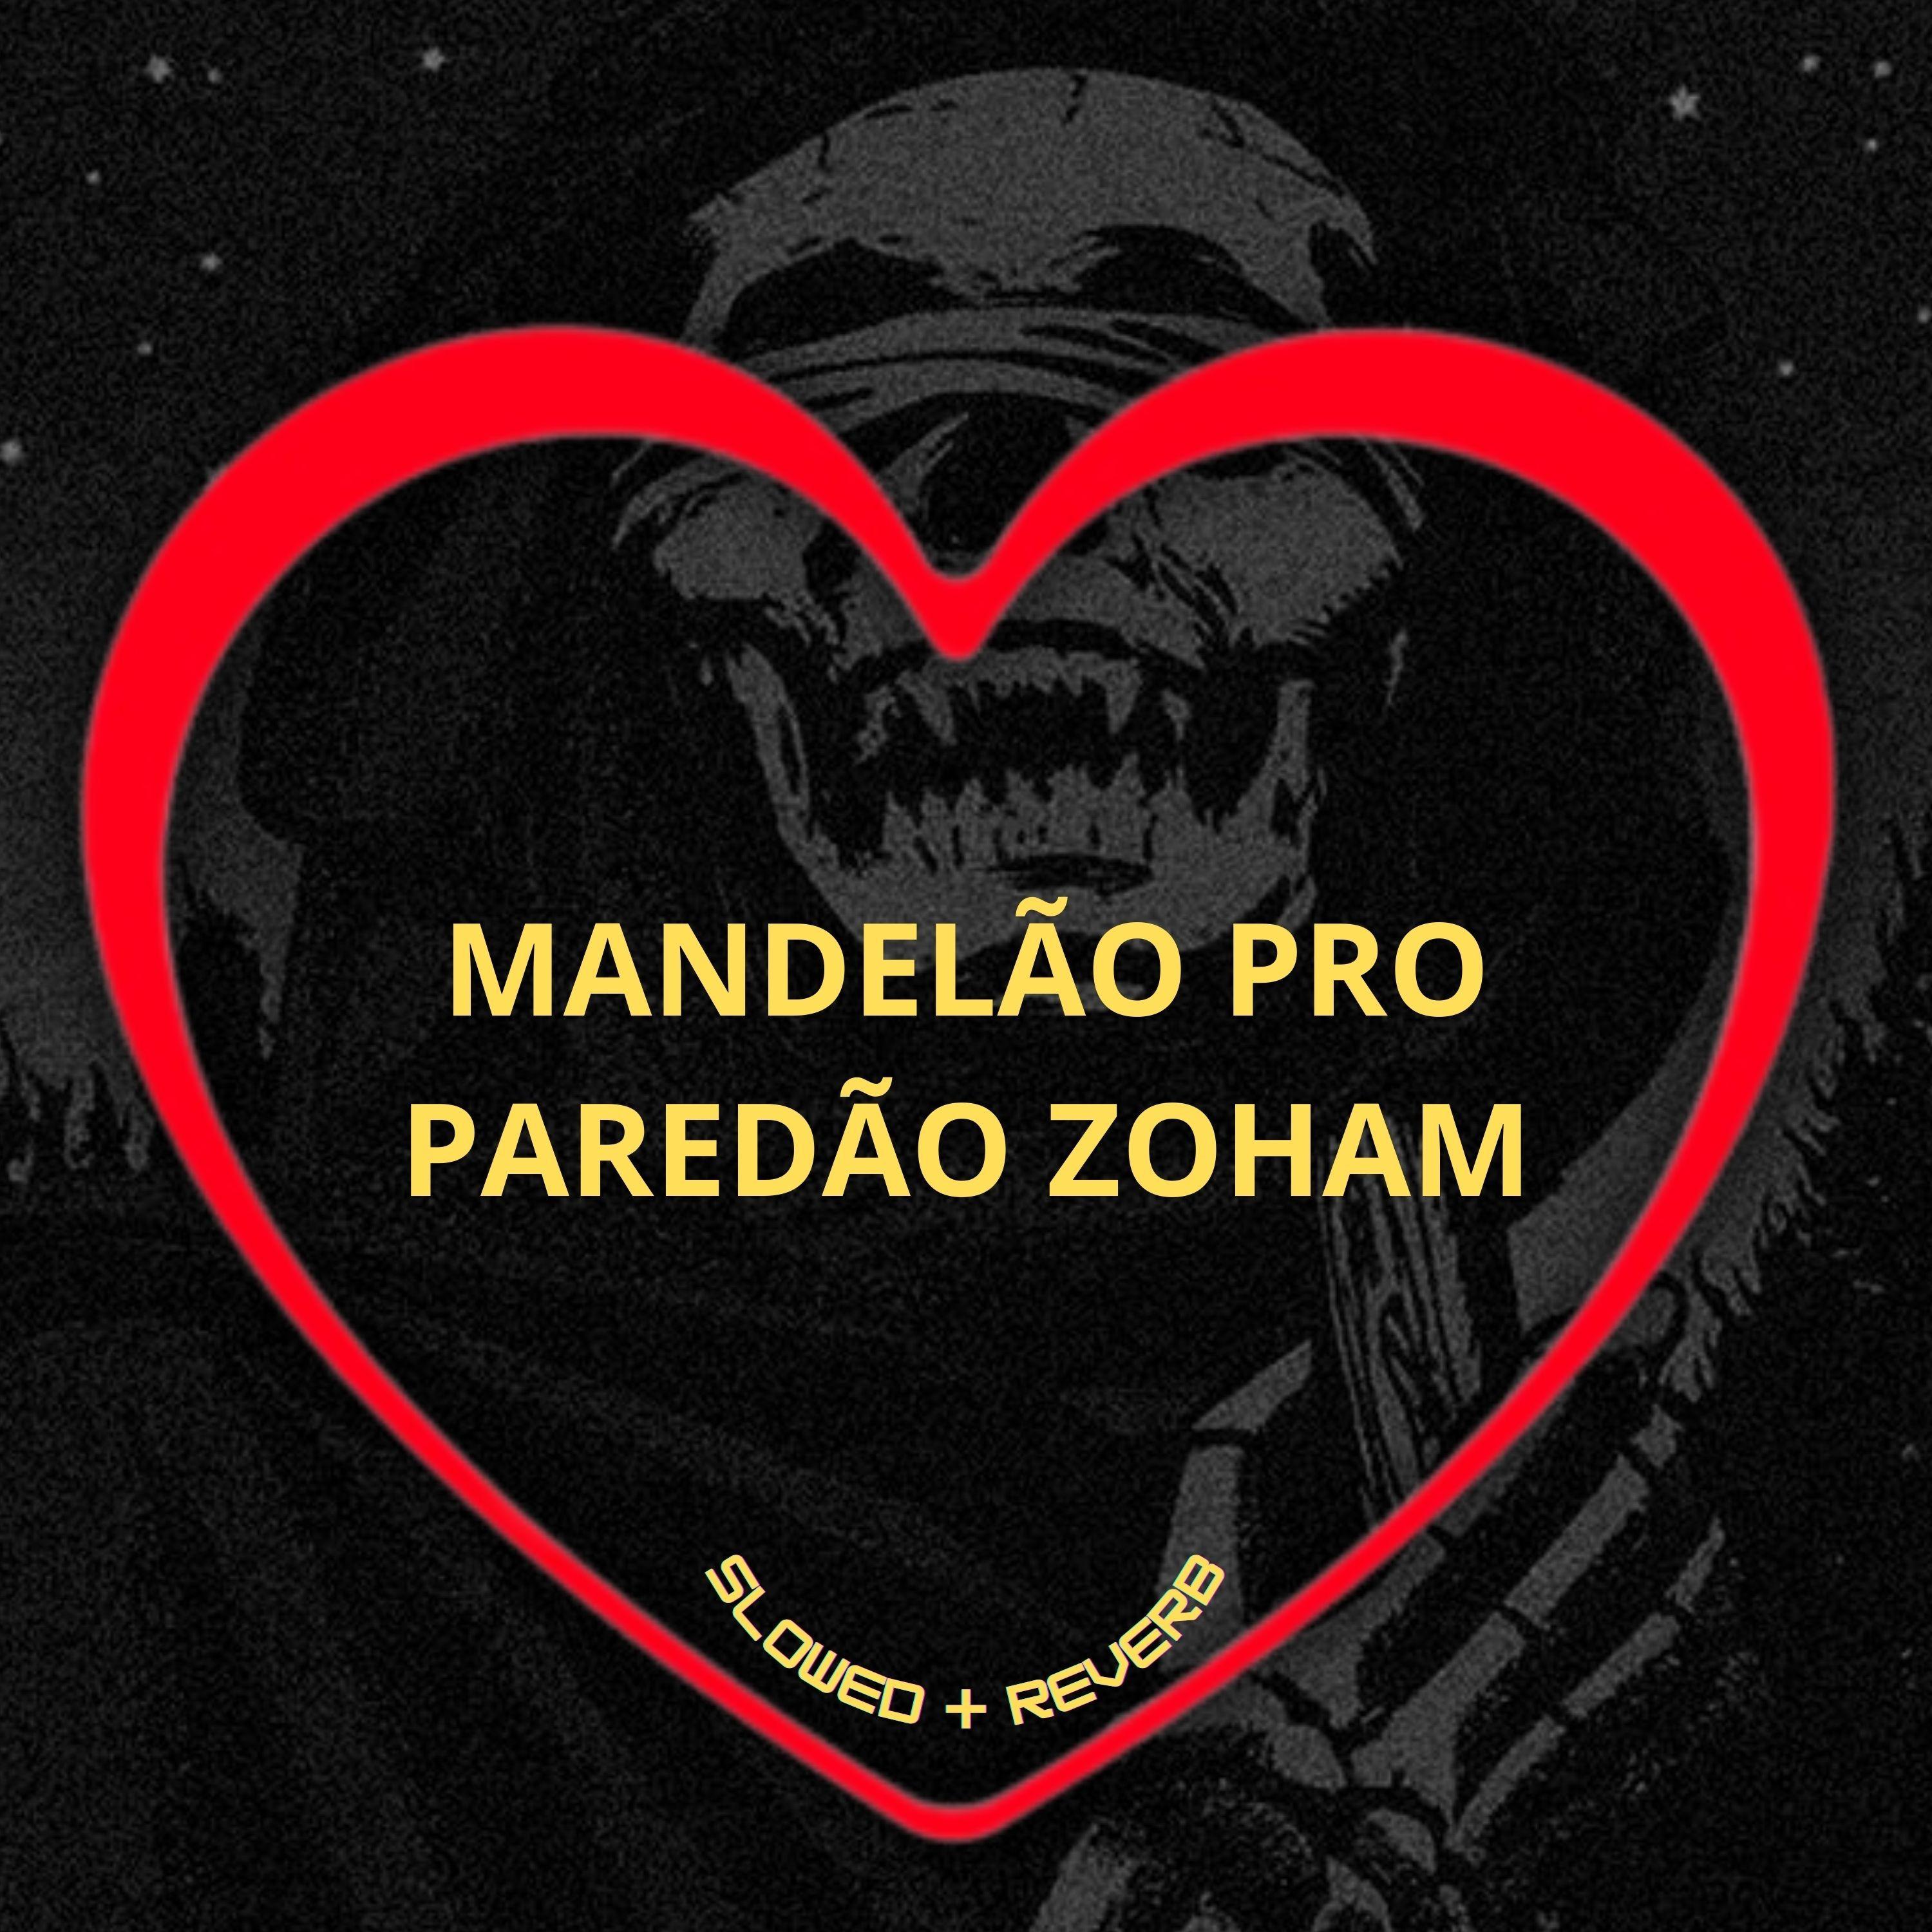 Love Fluxos - Mandelão pro Paredão Zoham (Slowed + Reverb)